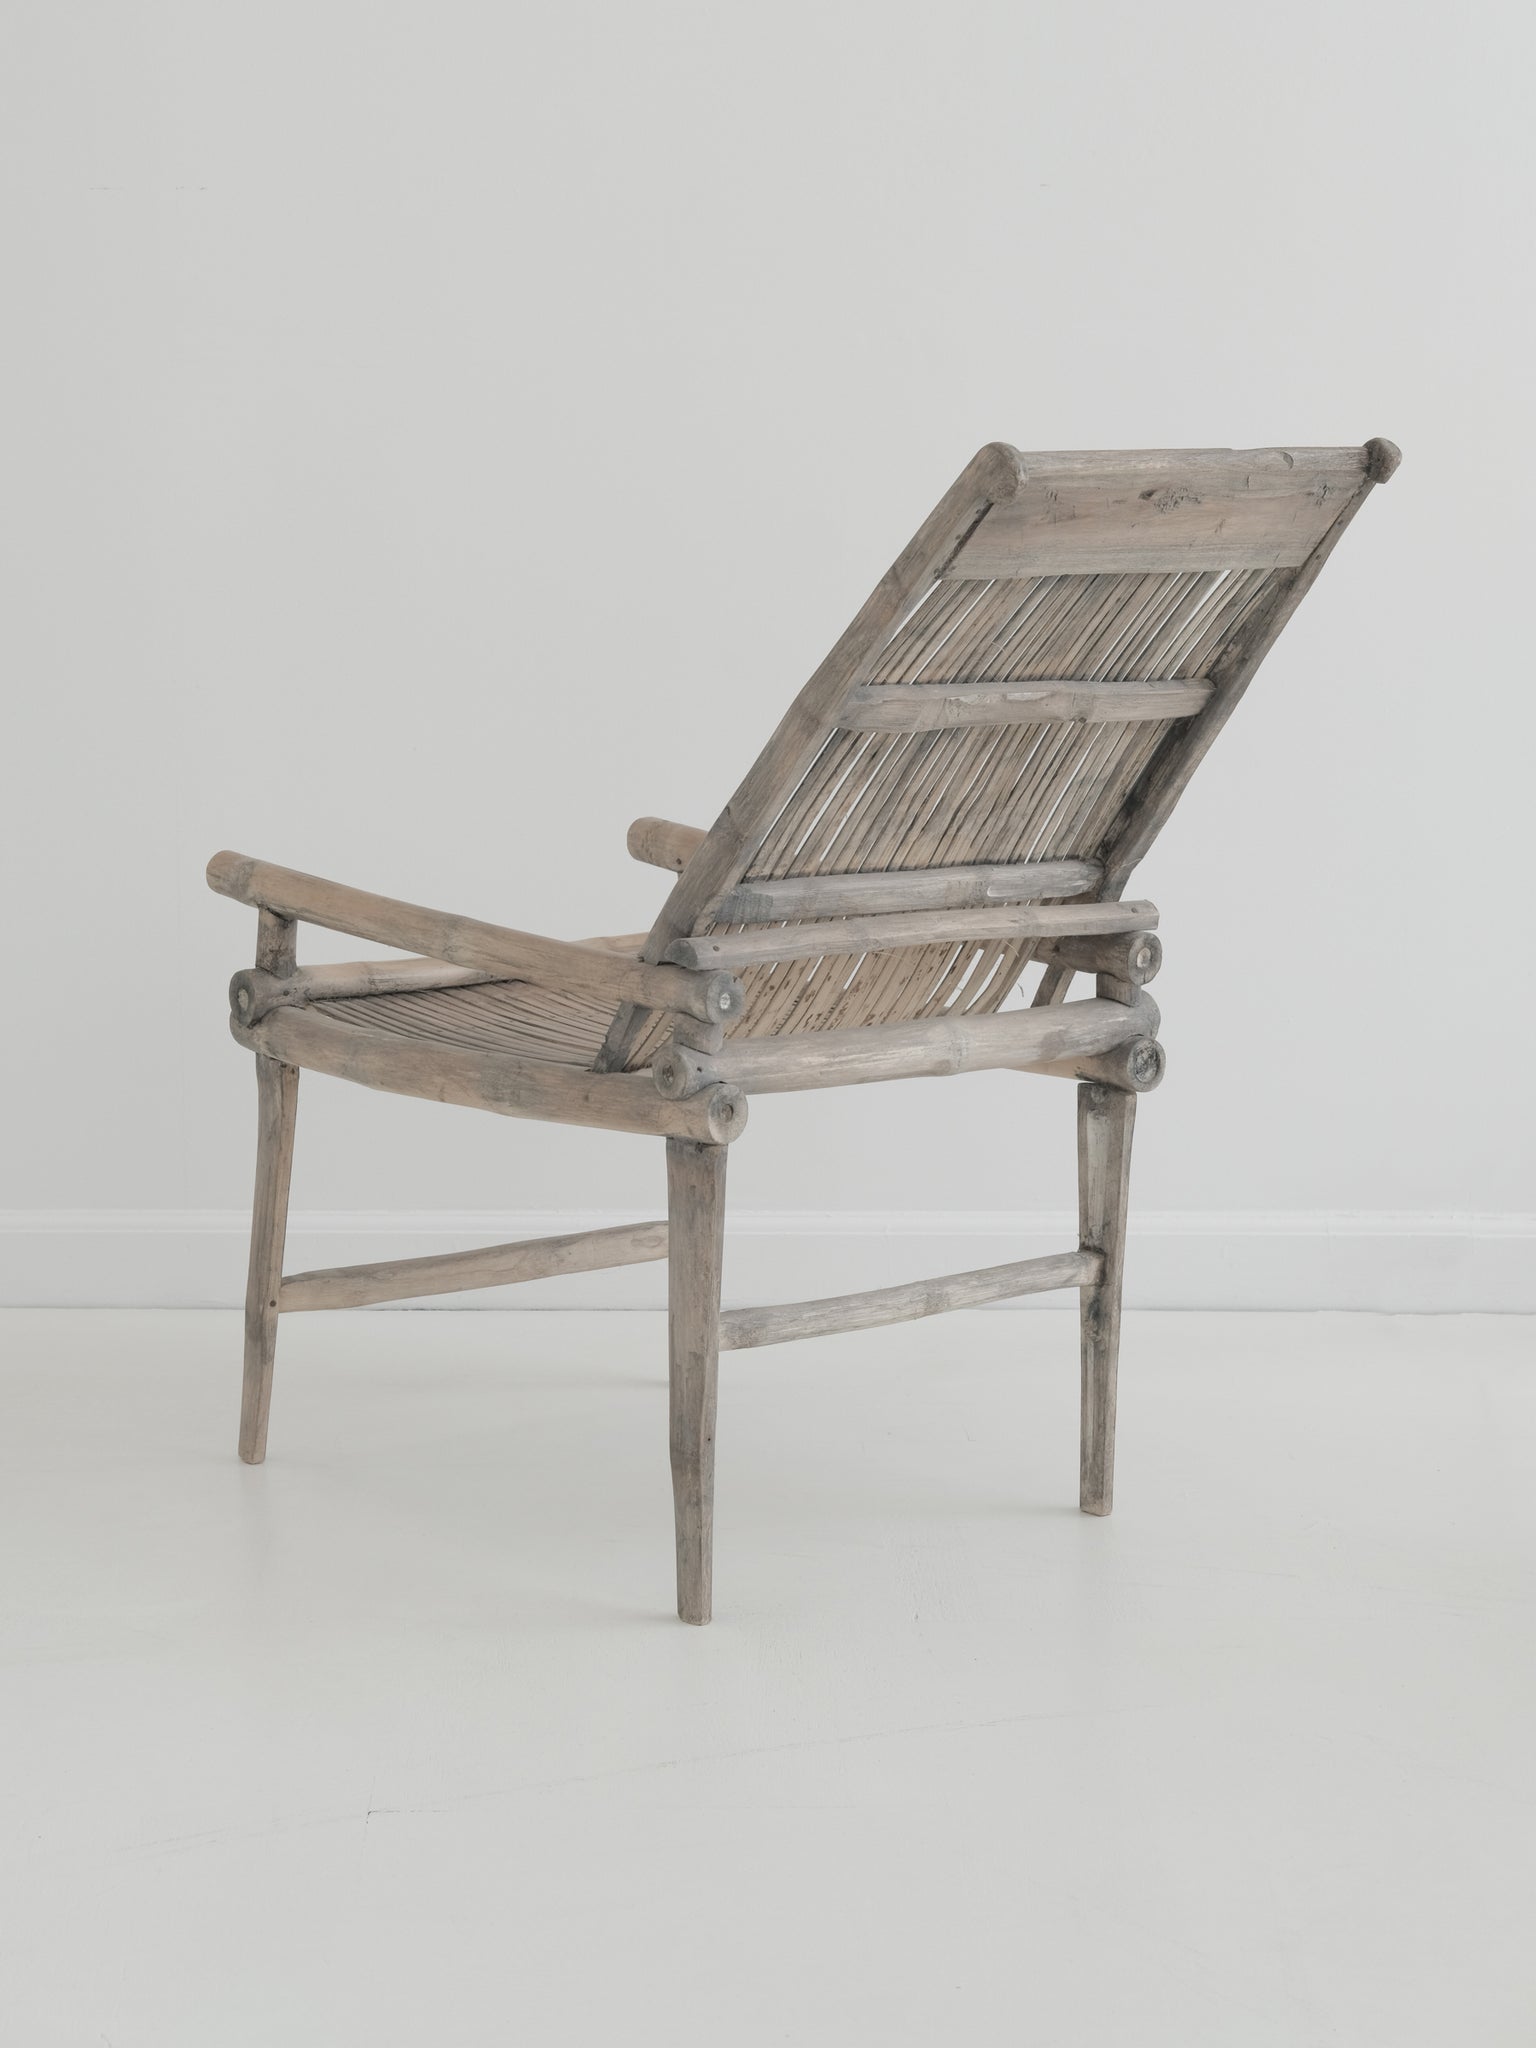 Antique Farmers Bamboo Chair